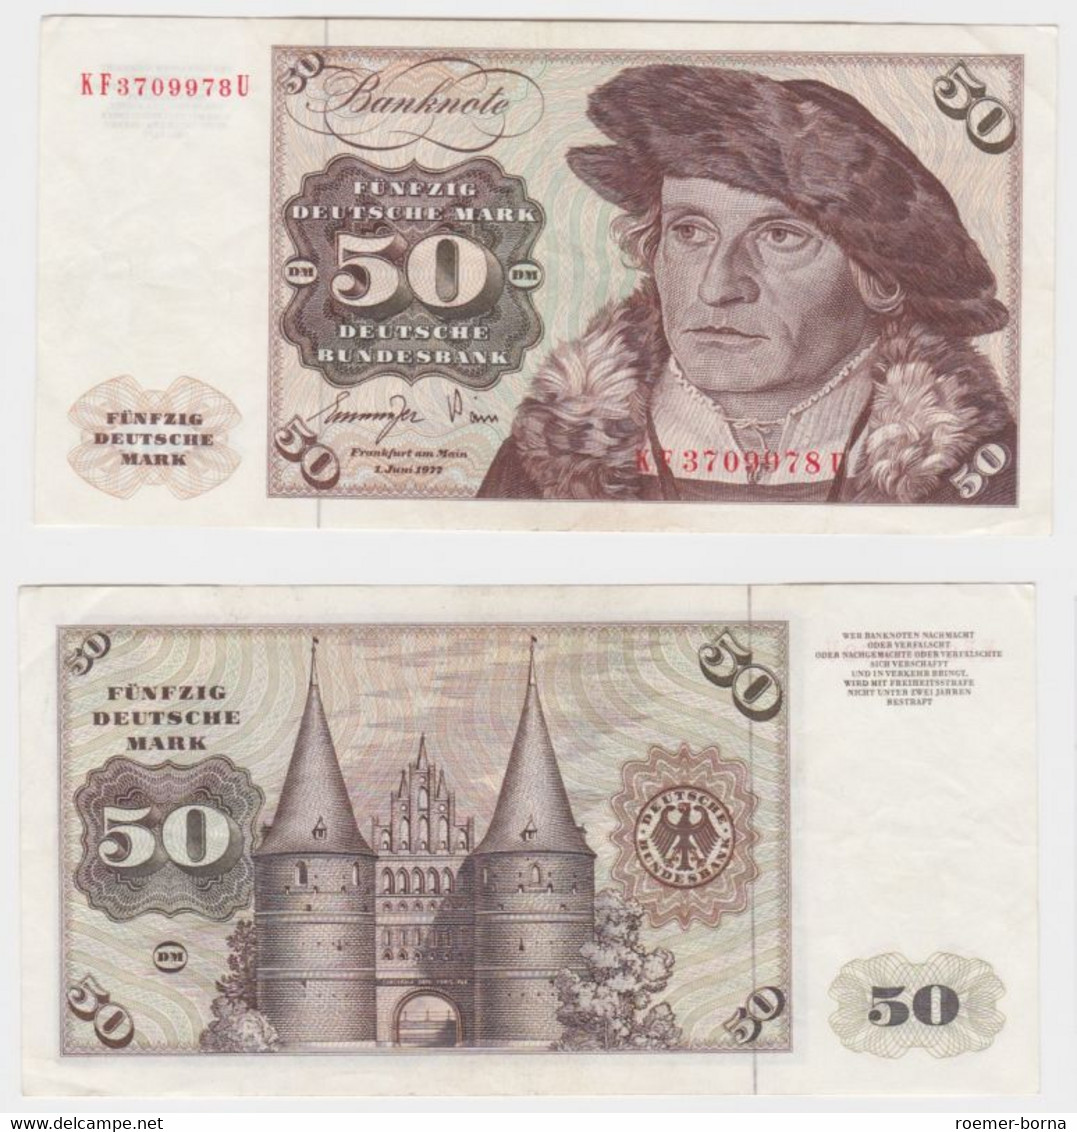 T145444 Banknote 50 DM Deutsche Mark Ro. 277a Schein 1.Juni 1977 KN KF 3709978 U - 50 Deutsche Mark